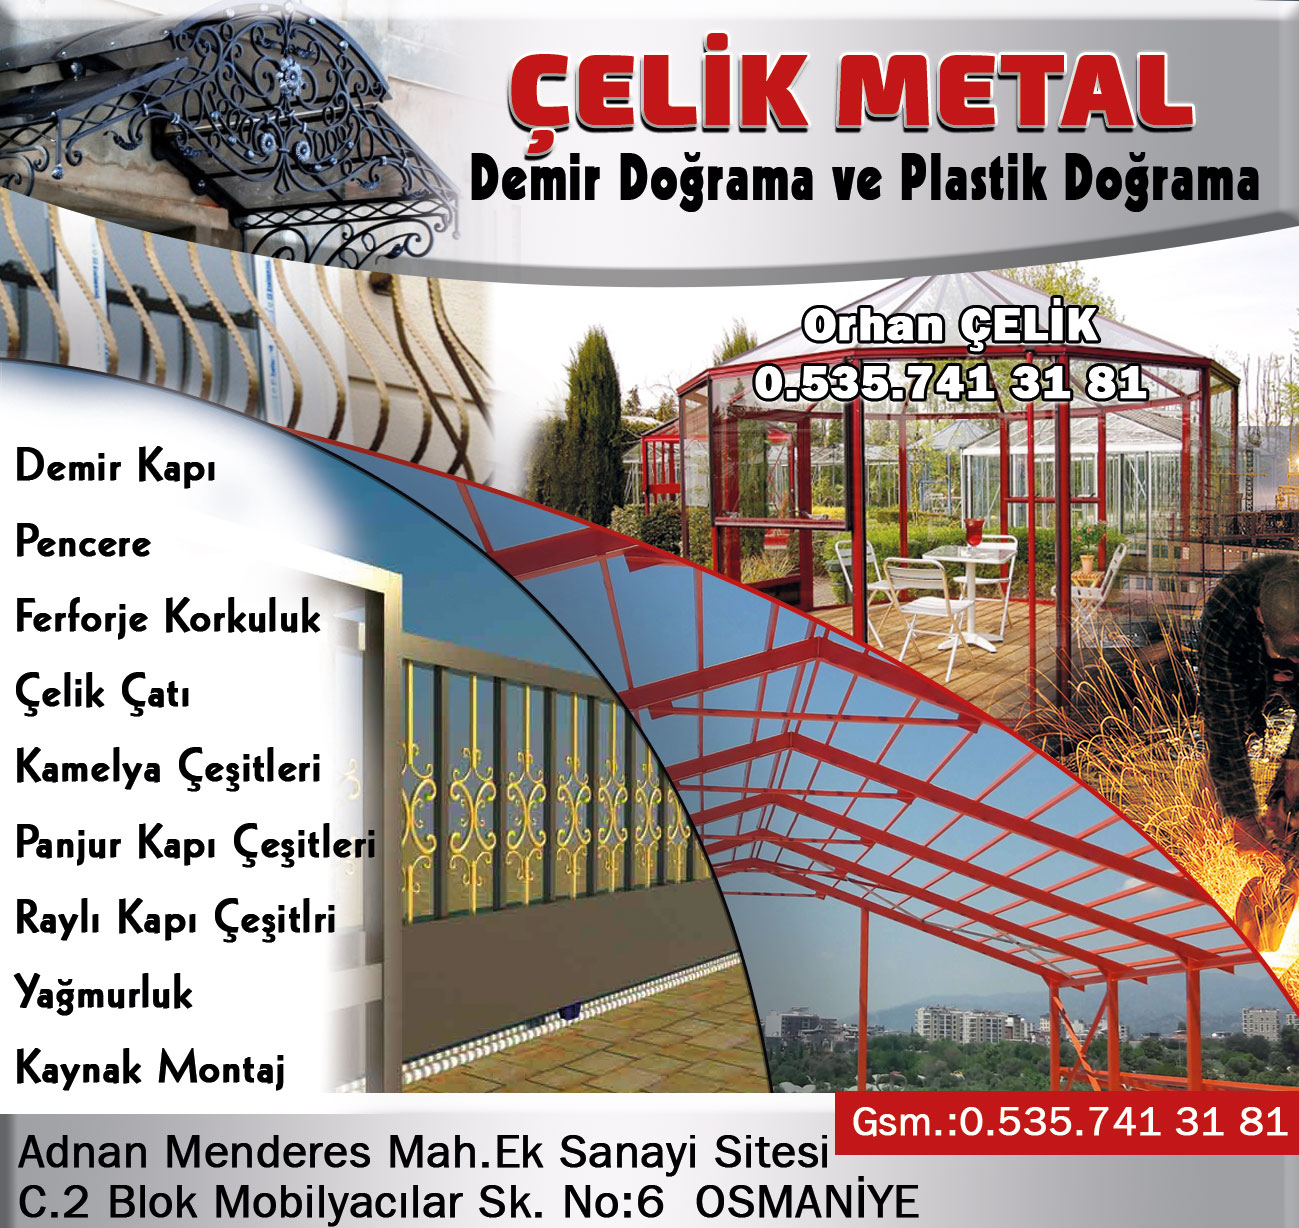 celik-metal-ve-demir-dograma-osmaniye